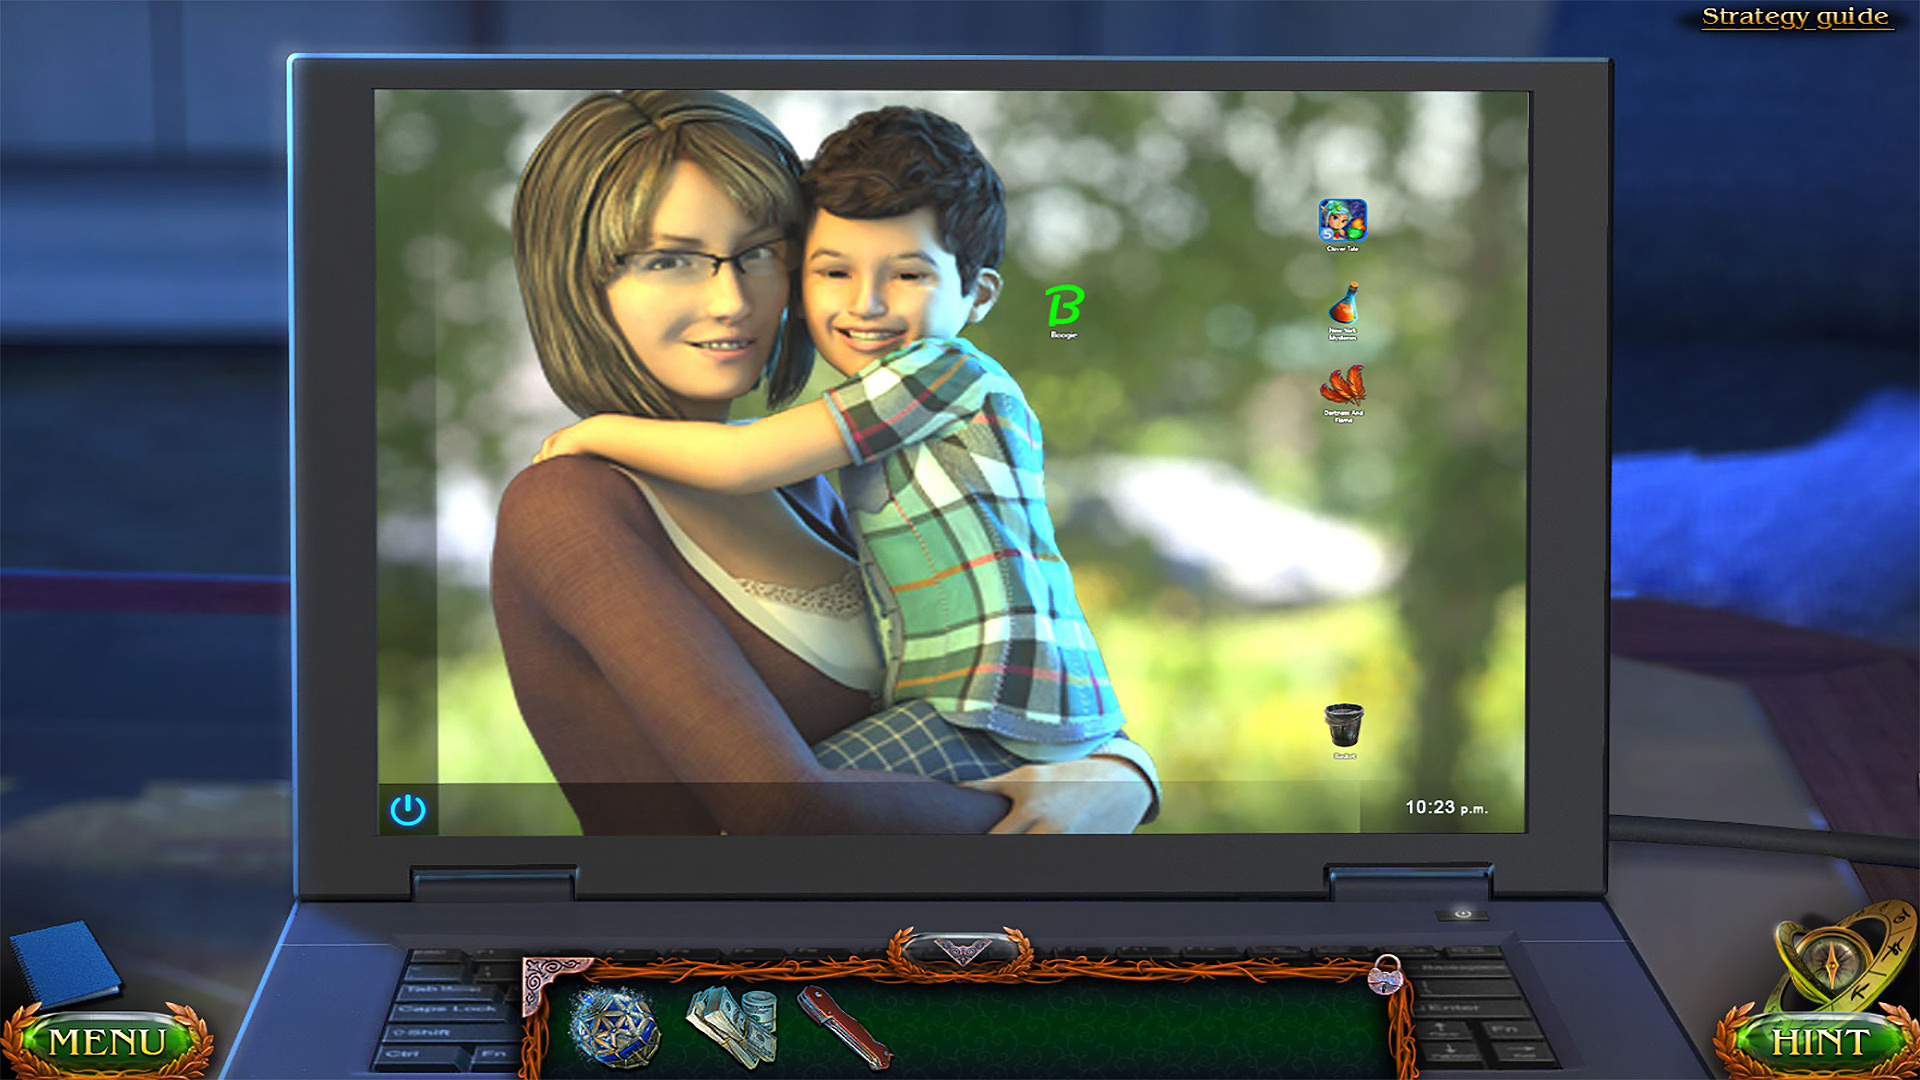 Baixe e jogue Lost Lands 1 no PC e Mac (emulador)